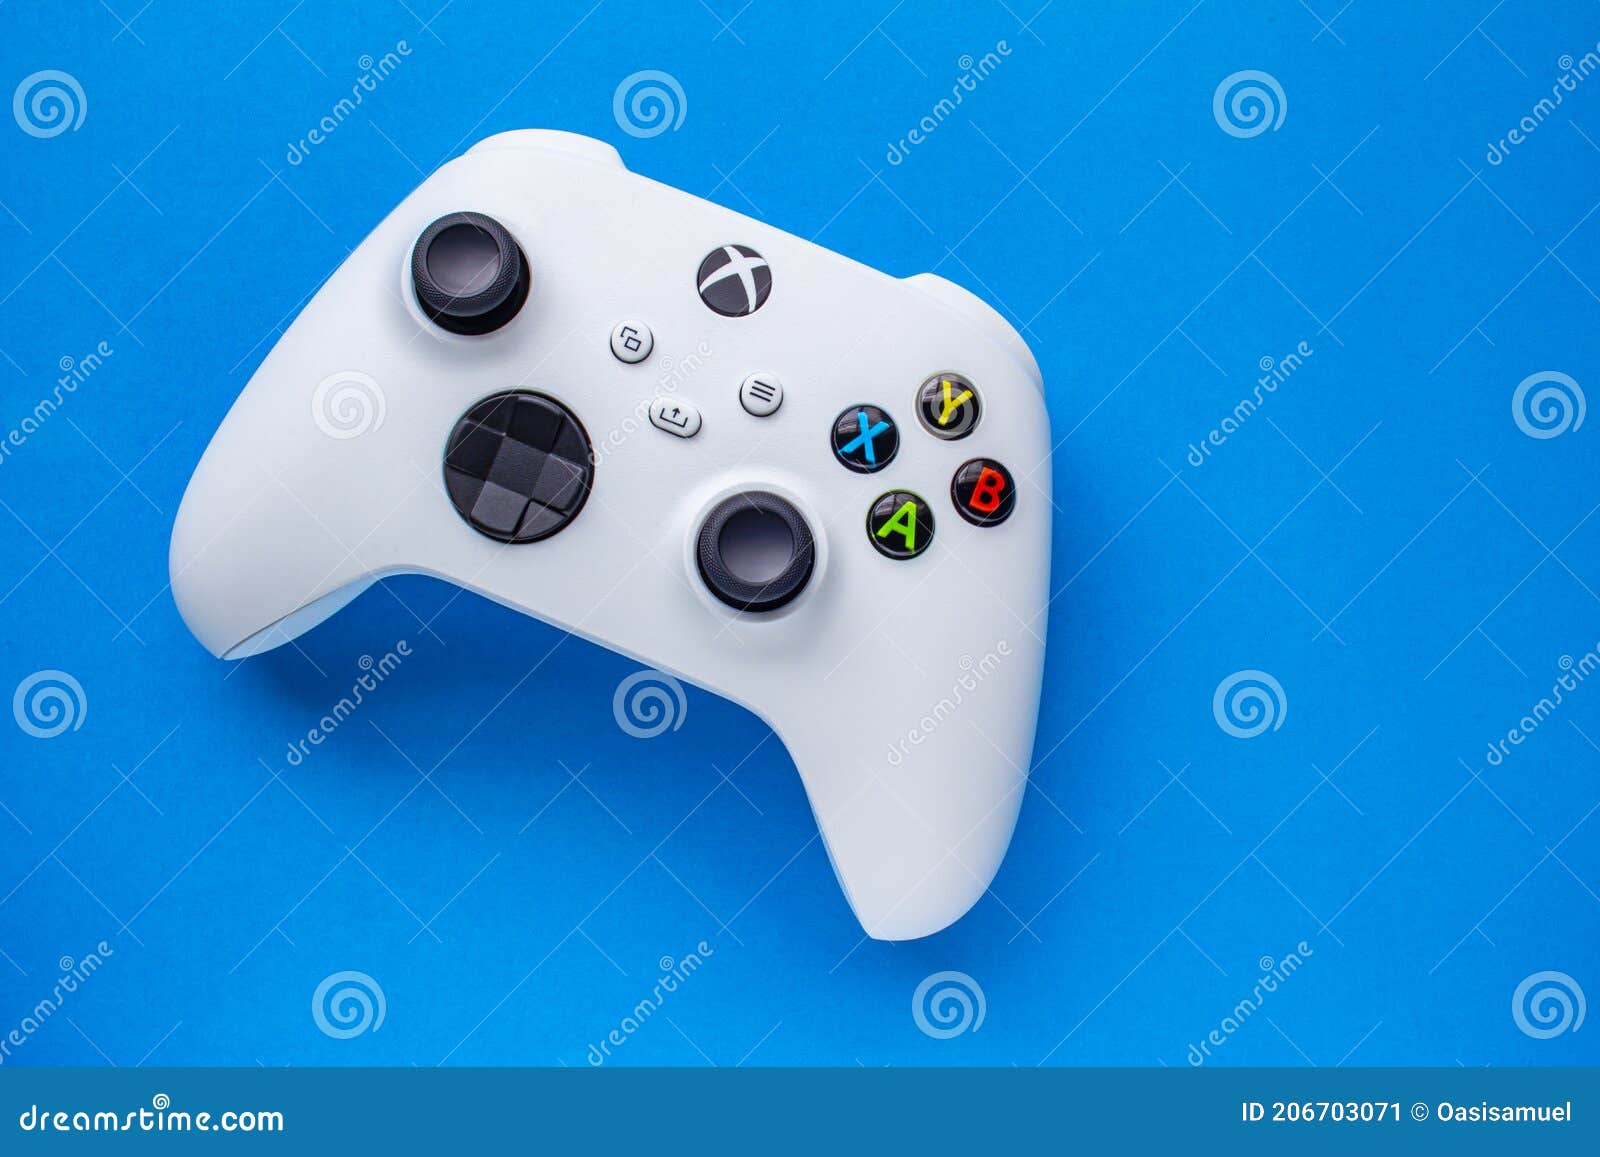 Xbox Wireless Controller: Tay cầm Xbox Wireless Controller sẽ đem đến cho bạn một cách chơi game tối ưu nhất. Với kết nối không dây, giúp bạn thoải mái di chuyển và tận hưởng trò chơi trong nhiều giờ liền.